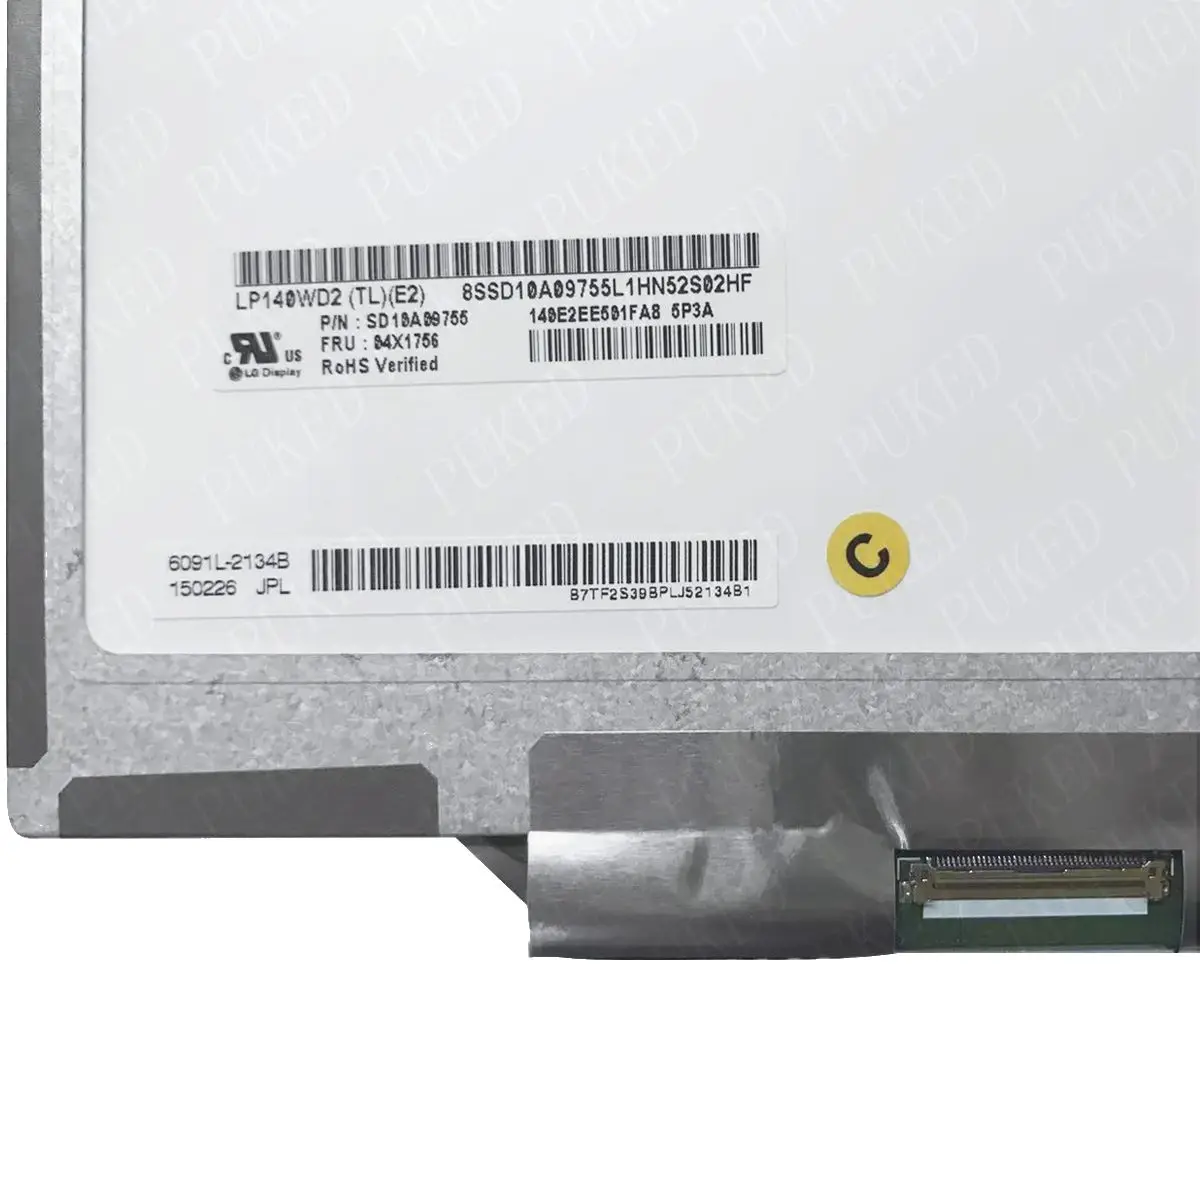 Оригинальный для ноутбука Lenovo Thinkpad X1 Carbon ЖК-светодиодный экран LP140WD2-TLE2 LP140WD2 (TL) (E2) 1600*900 FRU 04X1756 2